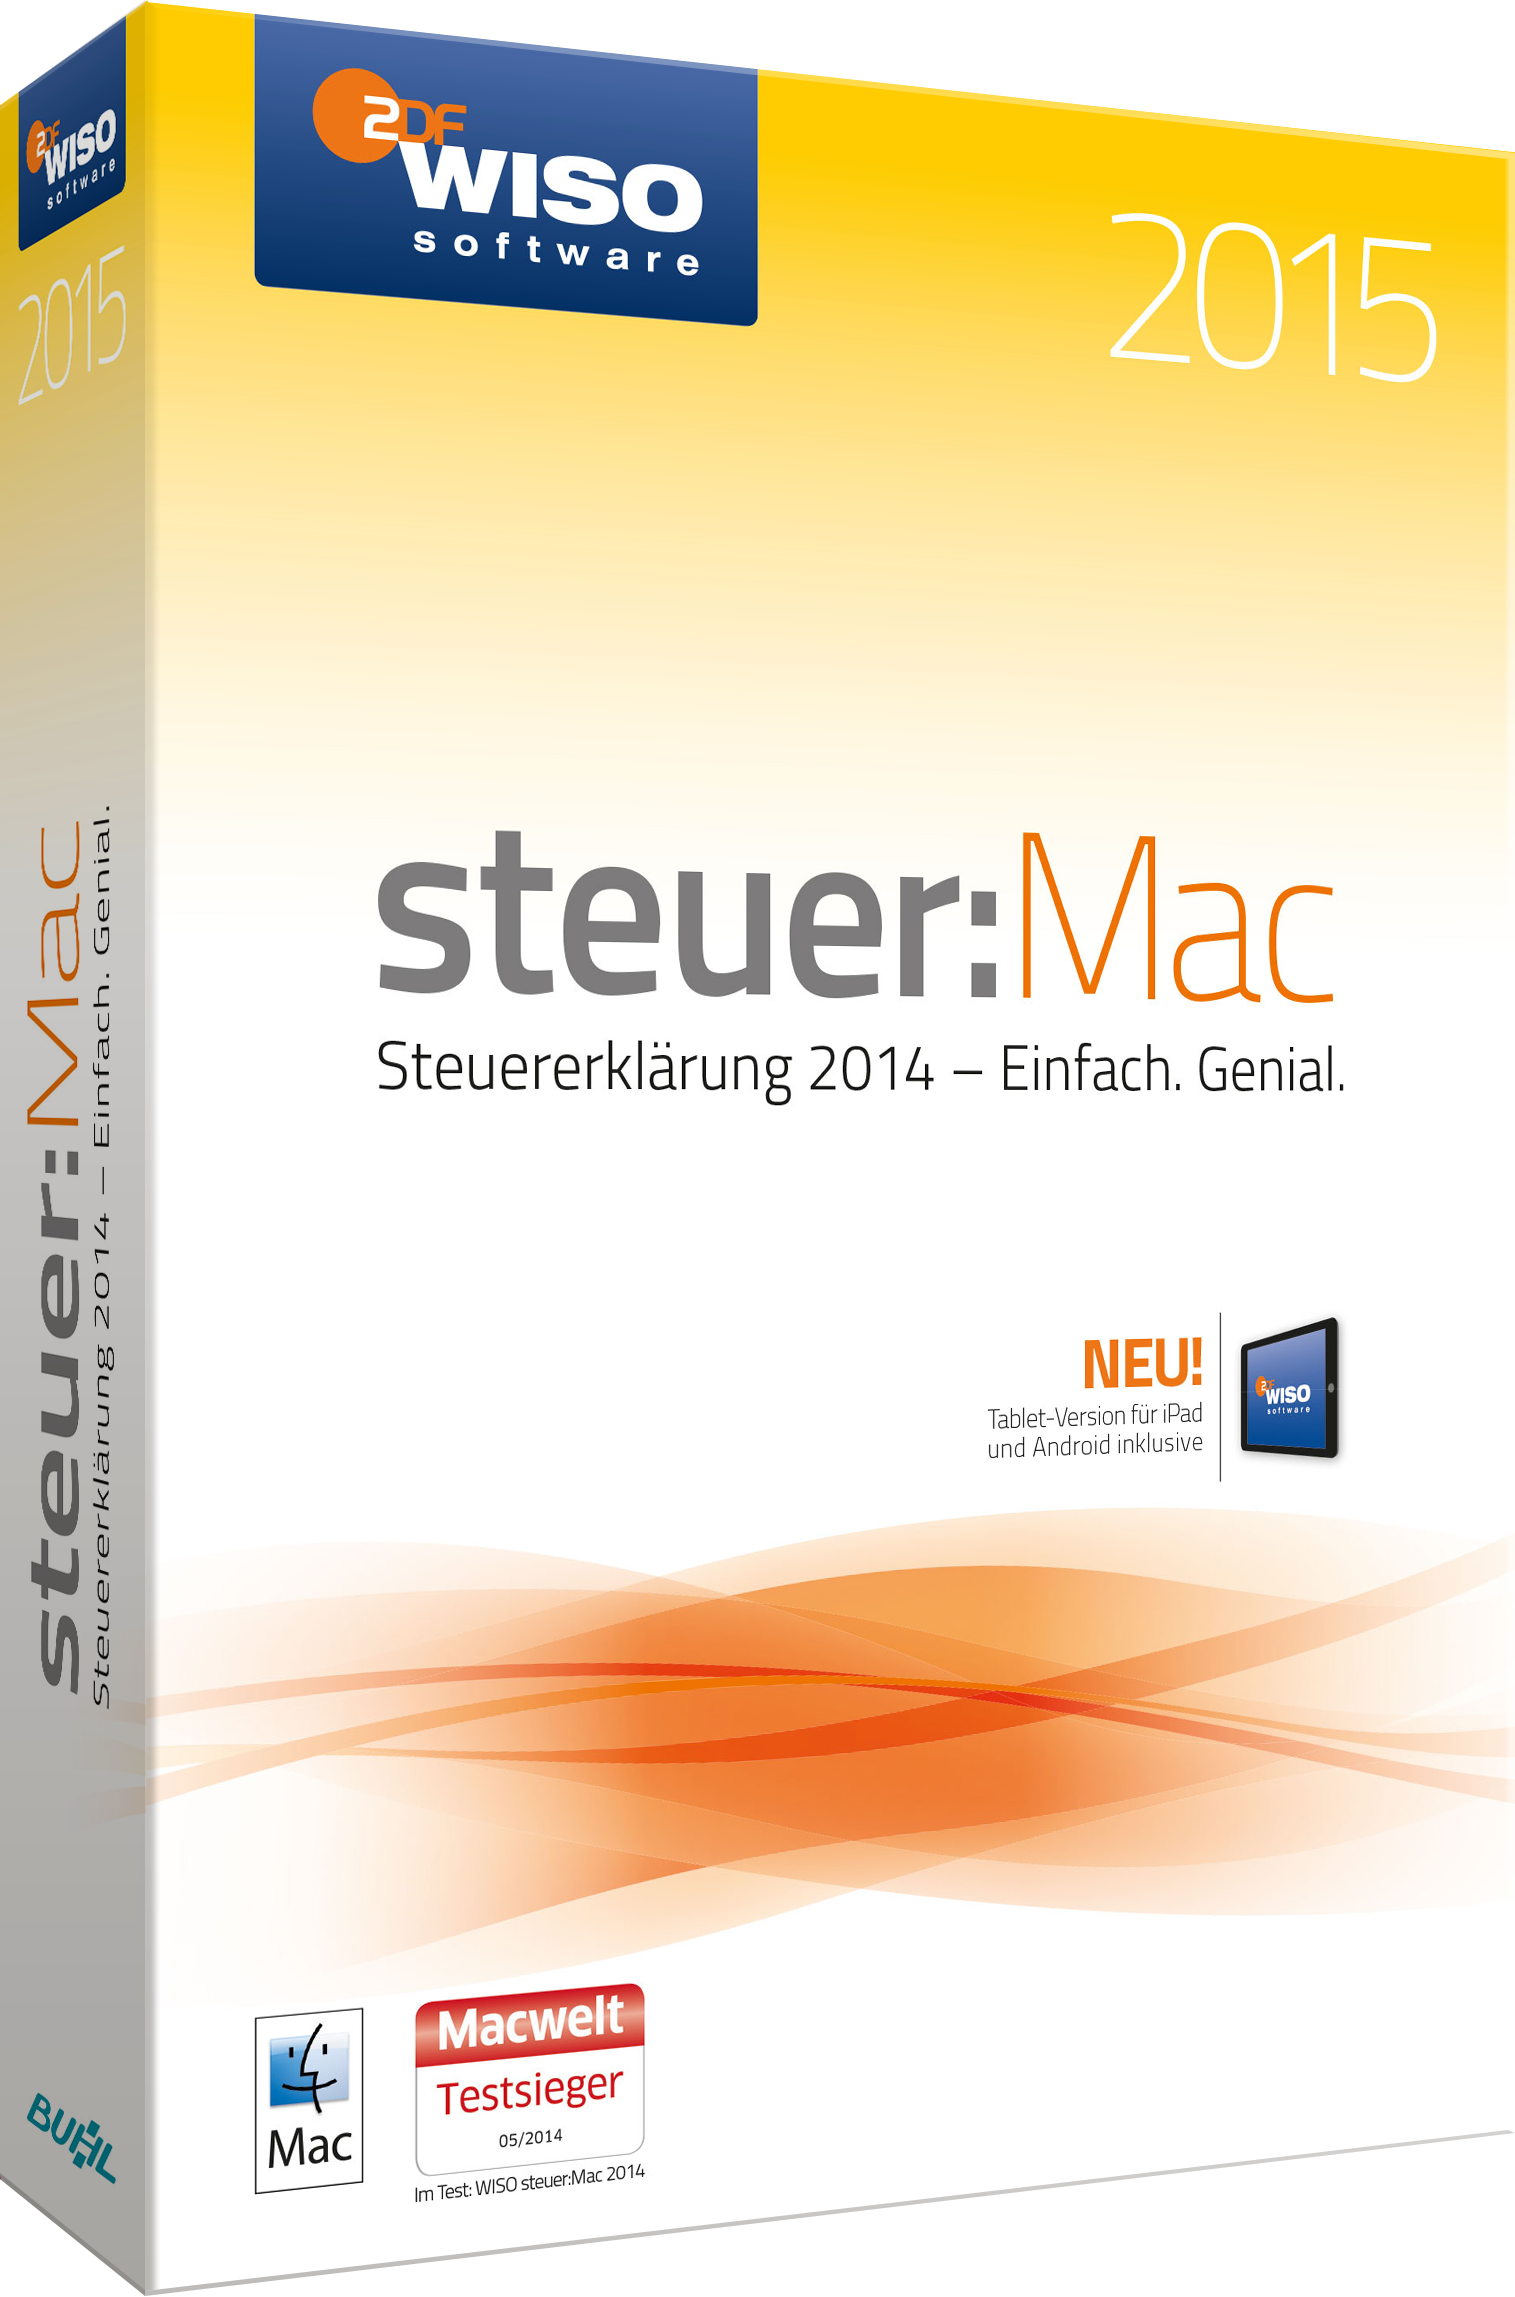 Hauptbild des Produkts: WISO steuer:Mac 2015